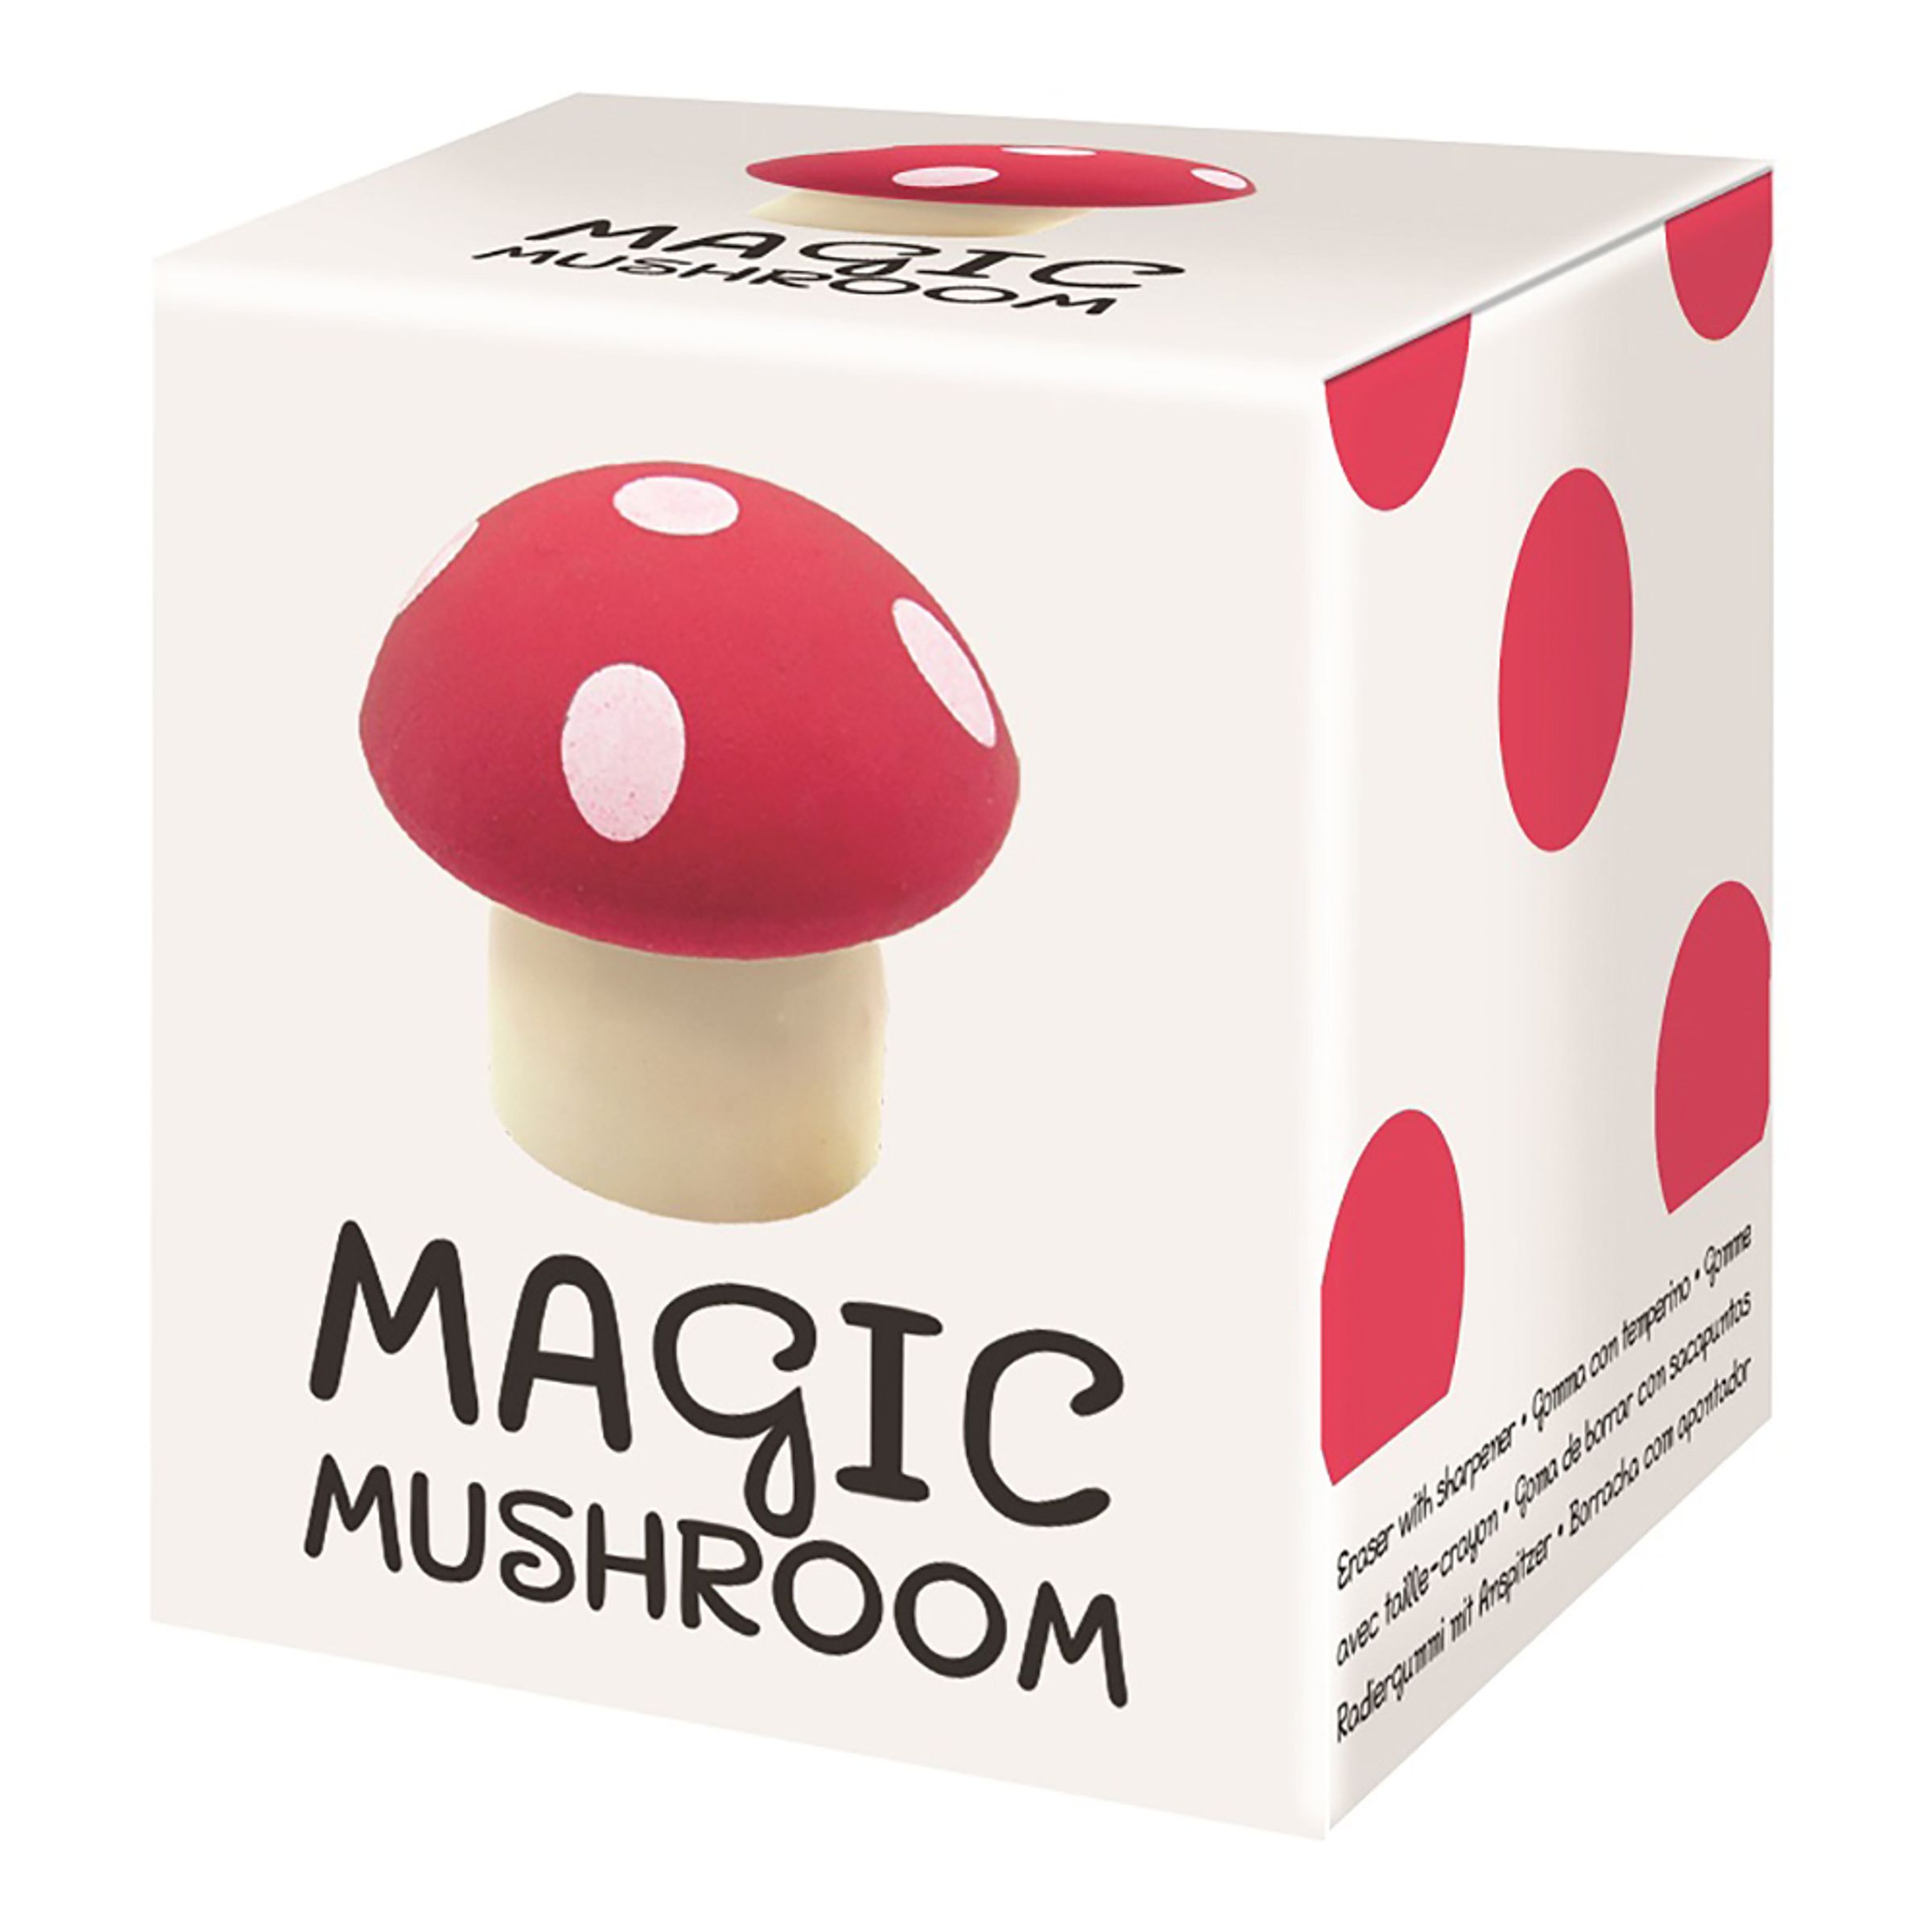 Pennvässare & Suddgummi Magic Mushroom